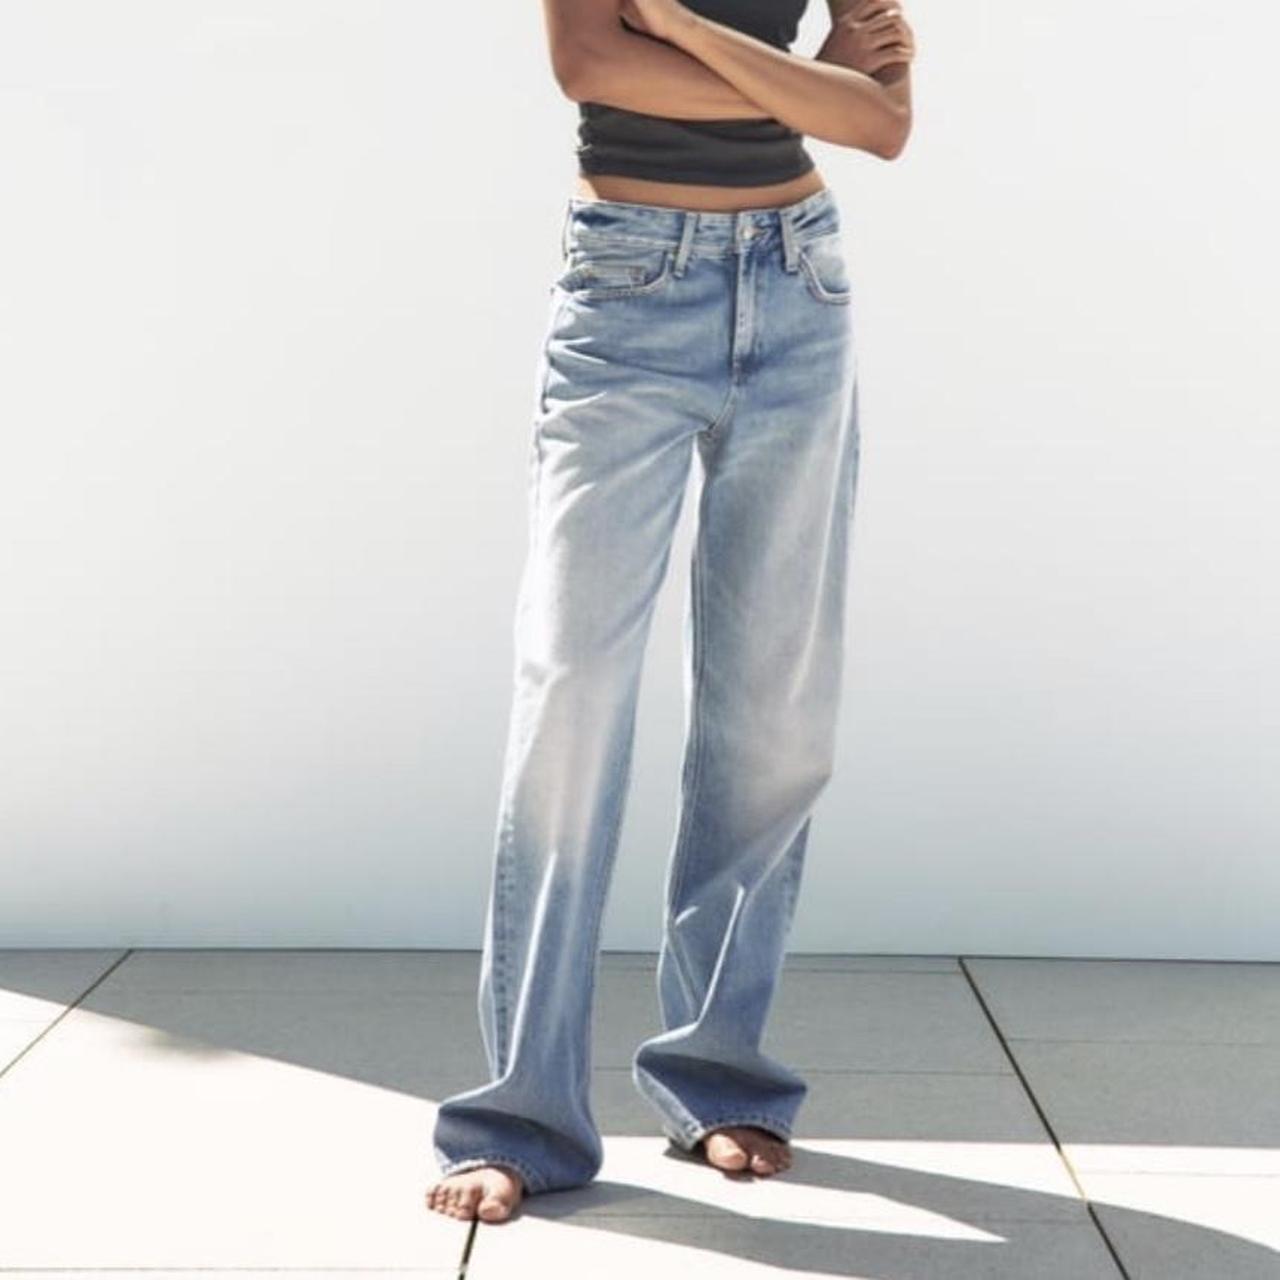 Zara TRF wide-leg mid-rise full length jeans in... - Depop